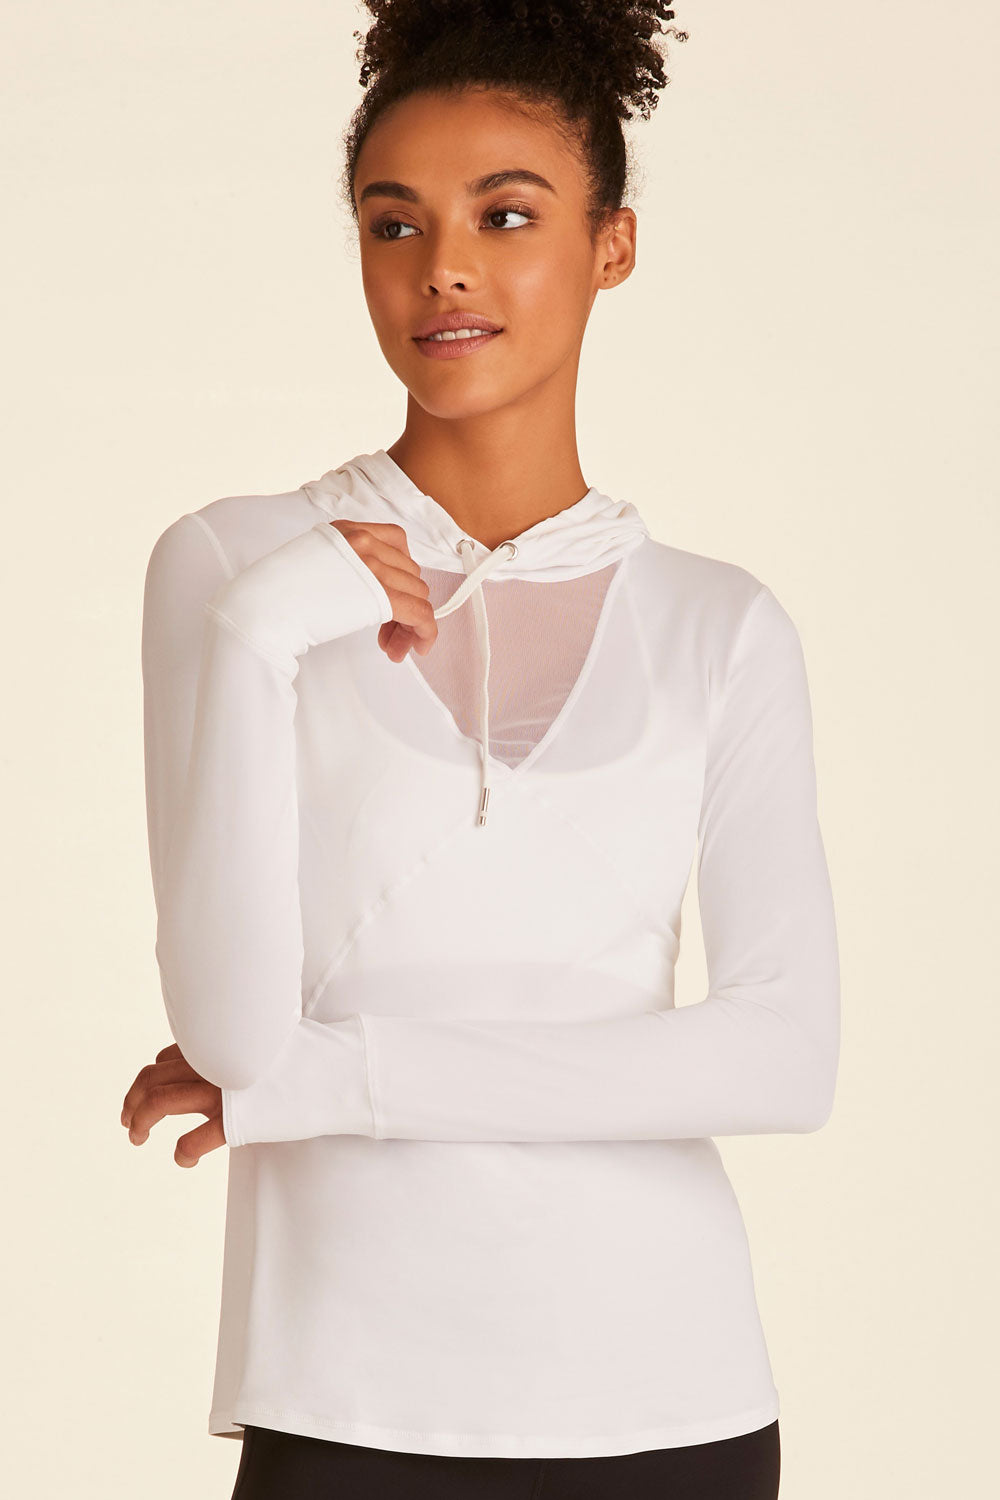 Lids Utah Jazz Levelwear Women's Evian Cut Off Pullover Hoodie - White